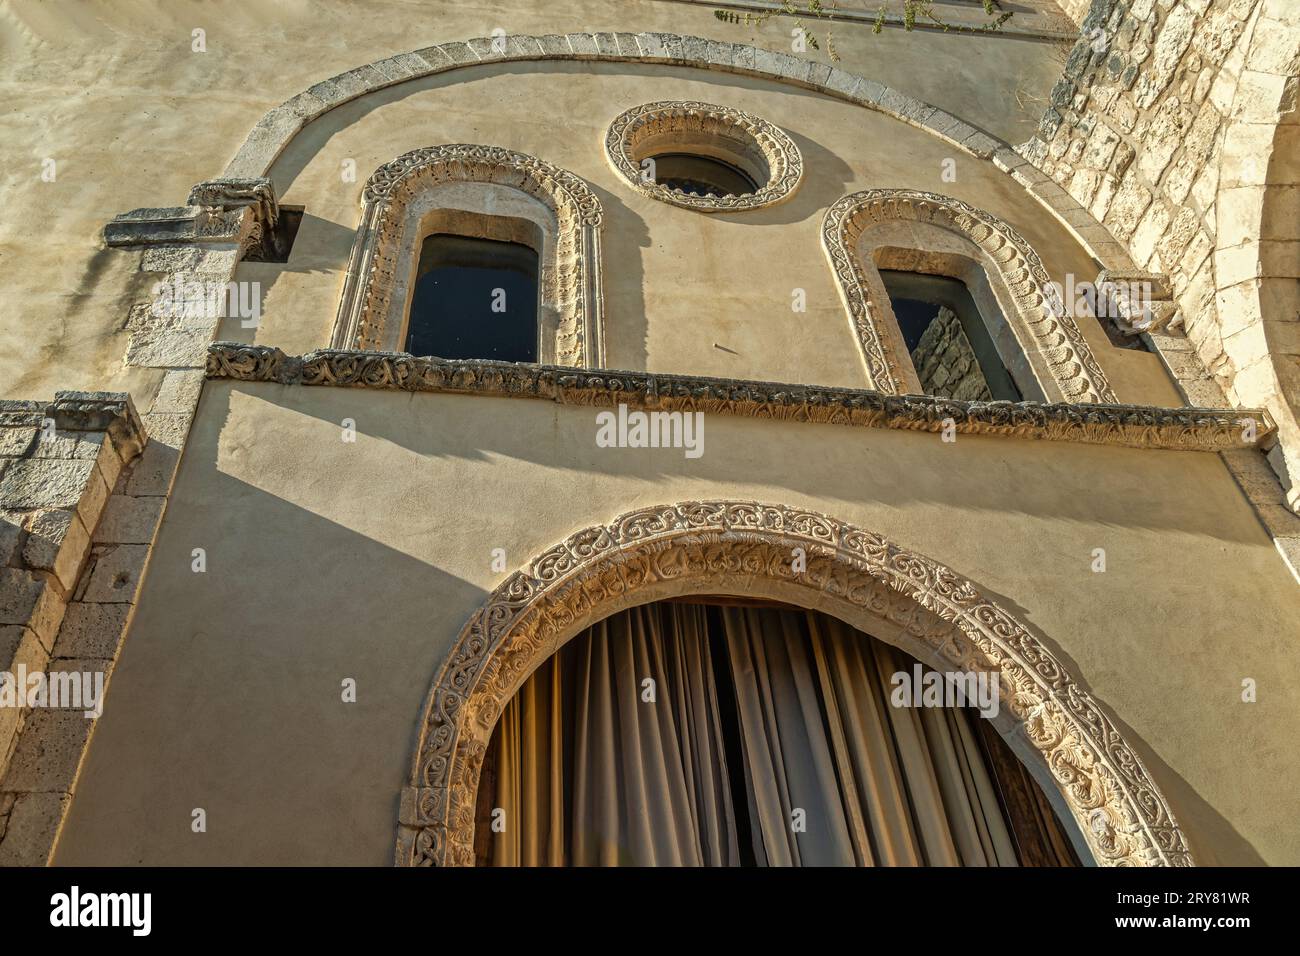 Werfen Sie einen Blick auf die Architektur der birituellen, lateinischen und byzantinischen Abtei von Santa Maria di Pulsano. Die Einsiedeleien sind Orte des Herzens der FAI. Stockfoto